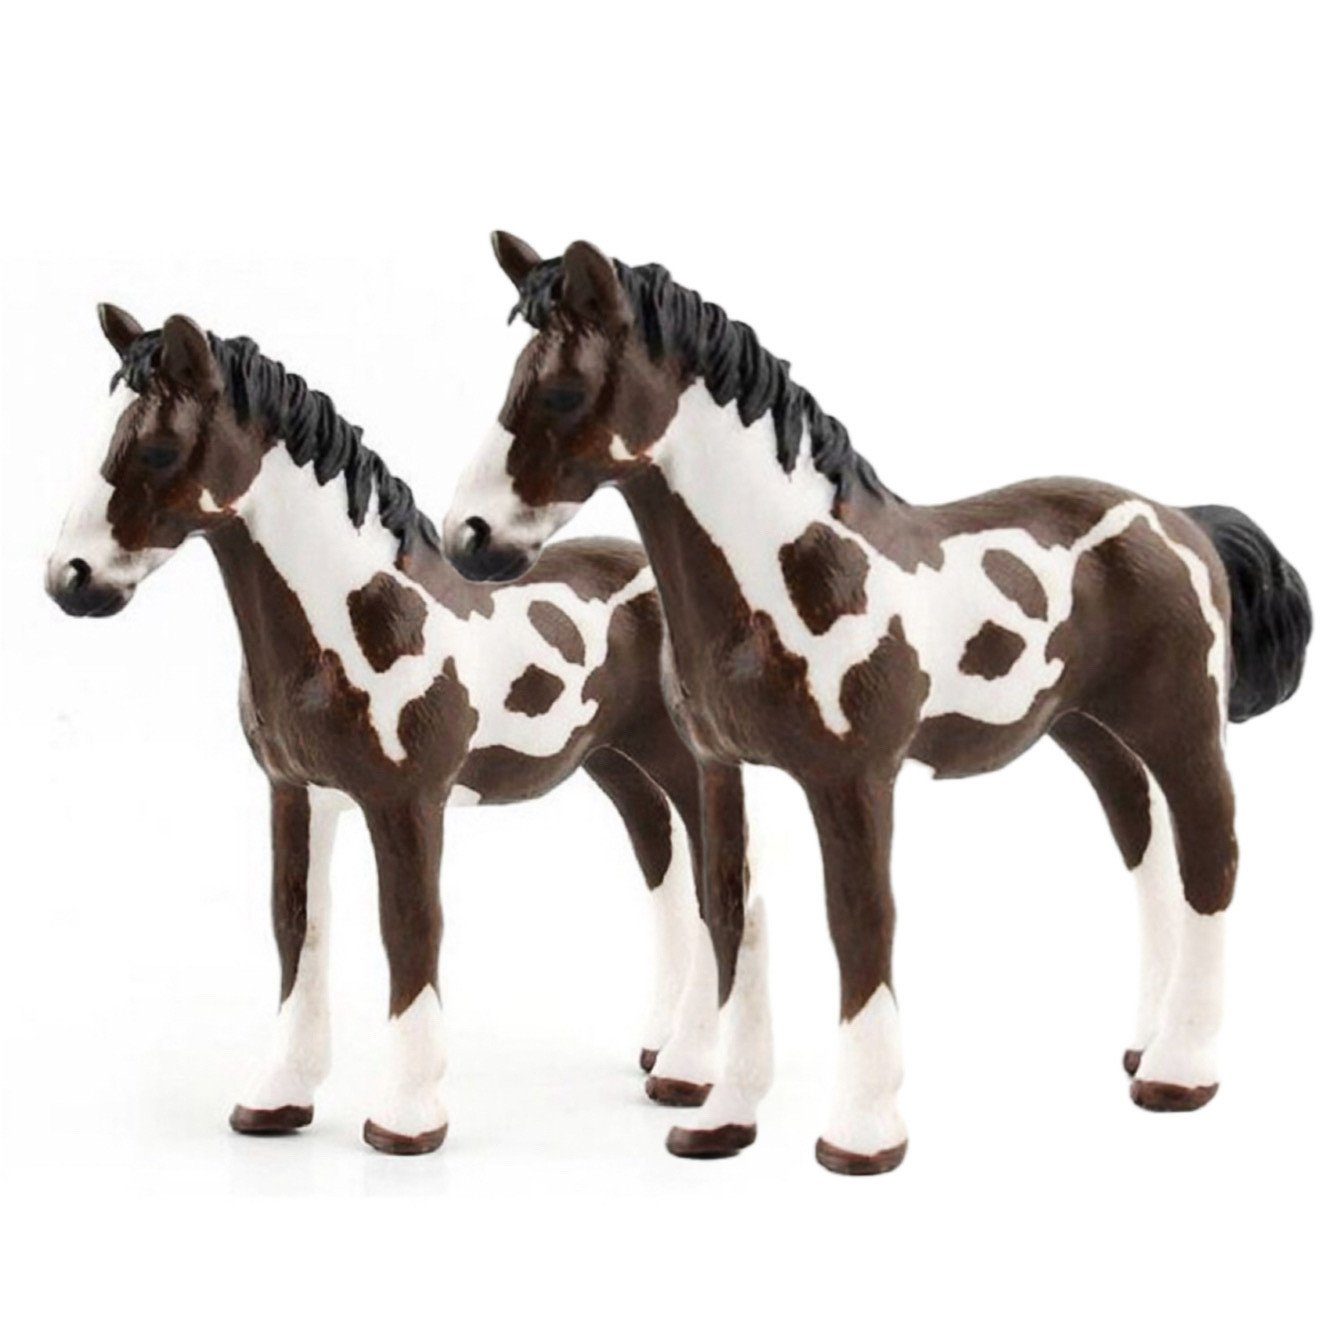 SCRTD Tierfigur Tierfiguren, 2 Stück Pferd Figuren Ornamente,Kinderspielzeug, Simulation Tiermodell,Kinderspielzeug,für Kinder